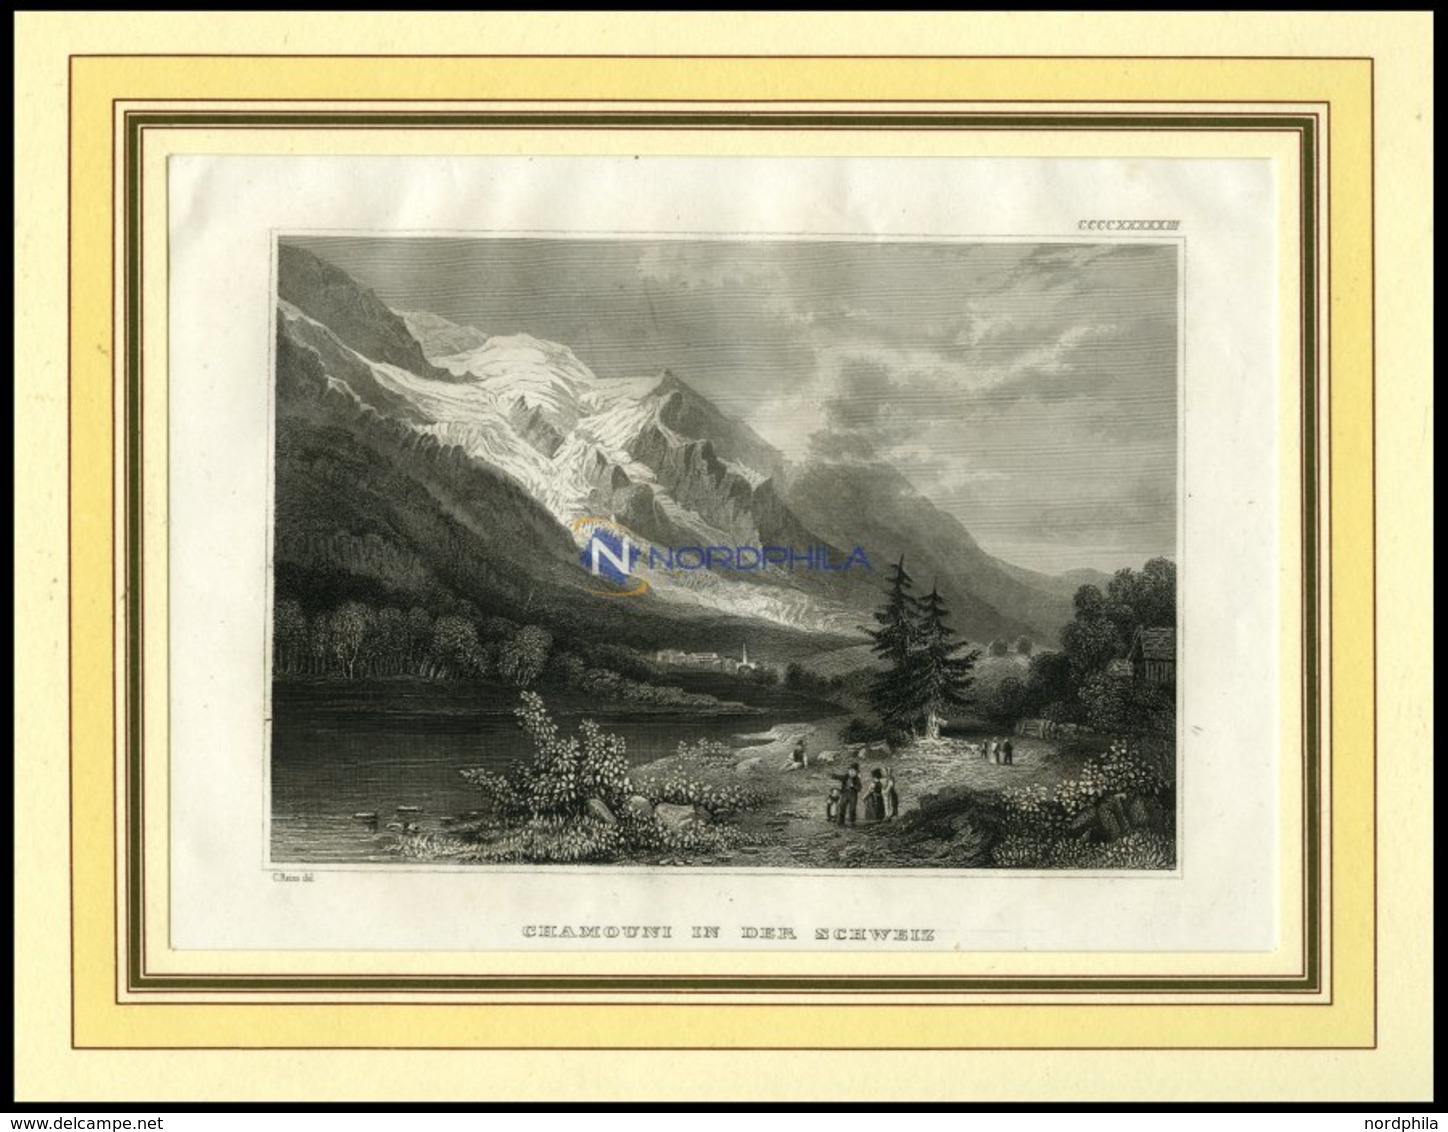 CHAMOUNY, Gesamtansicht, Blick In Das Tal, Stahlstich Von B.I.um 1840 - Lithographien